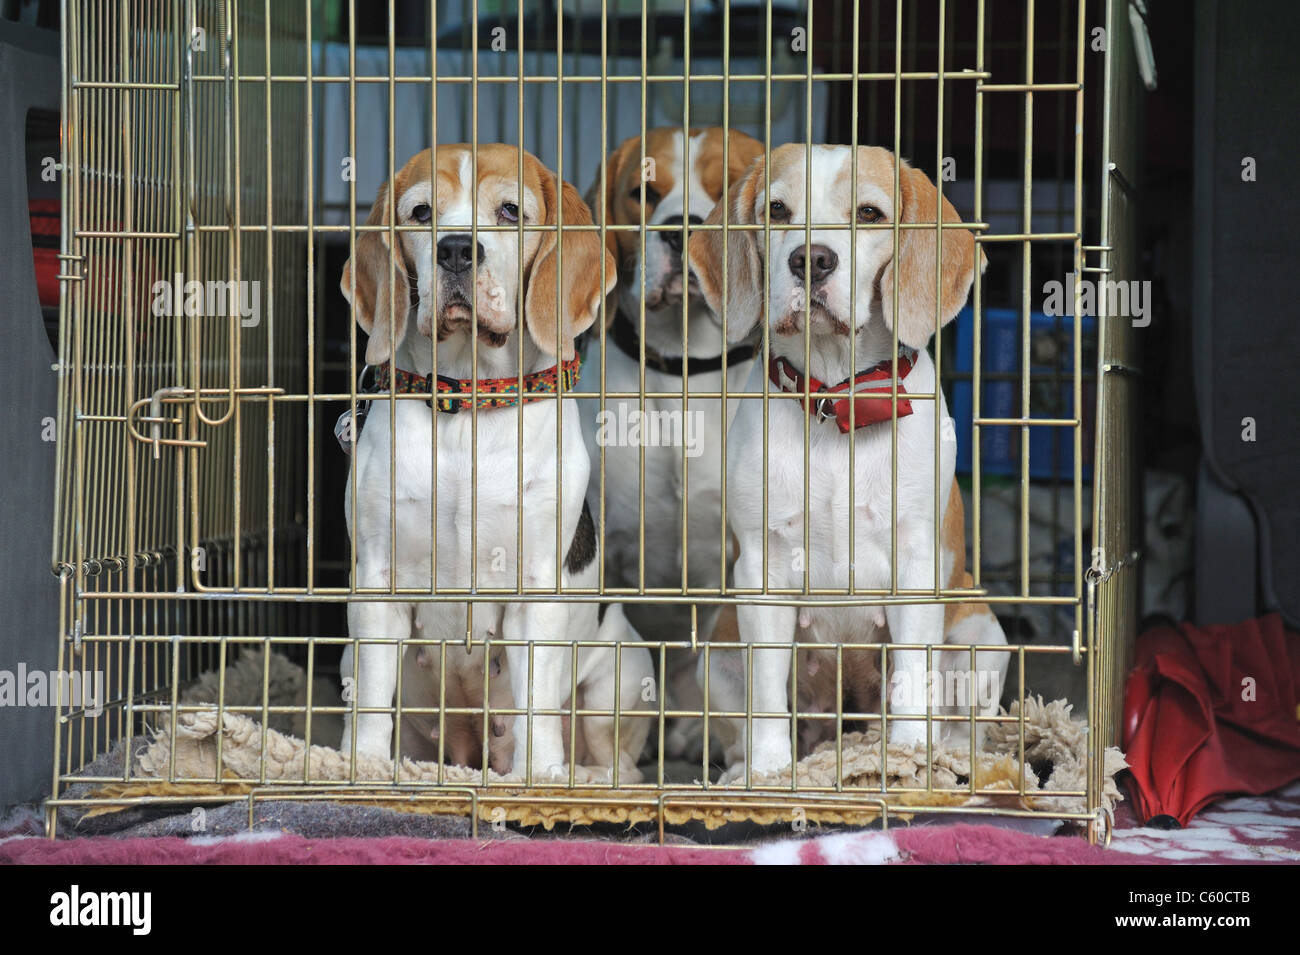 https://c8.alamy.com/comp/C60CTB/beagle-canis-lupus-familiaris-three-individuals-in-a-transport-cage-C60CTB.jpg